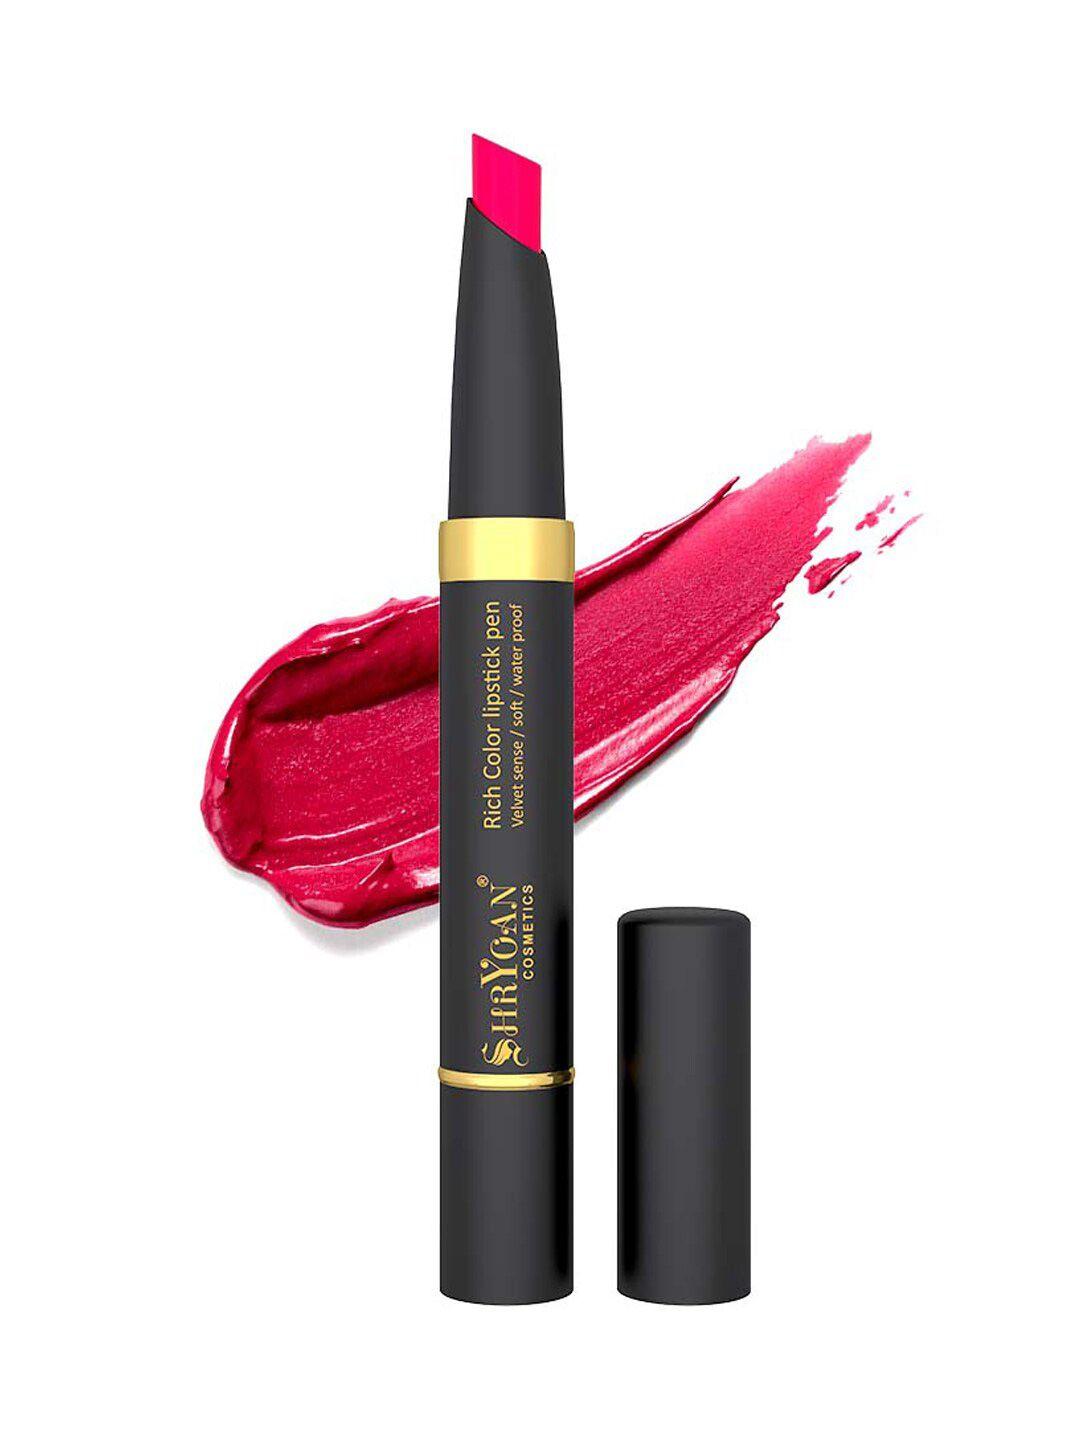 shryoan rich color waterproof lipstick - 2.1g - sh03